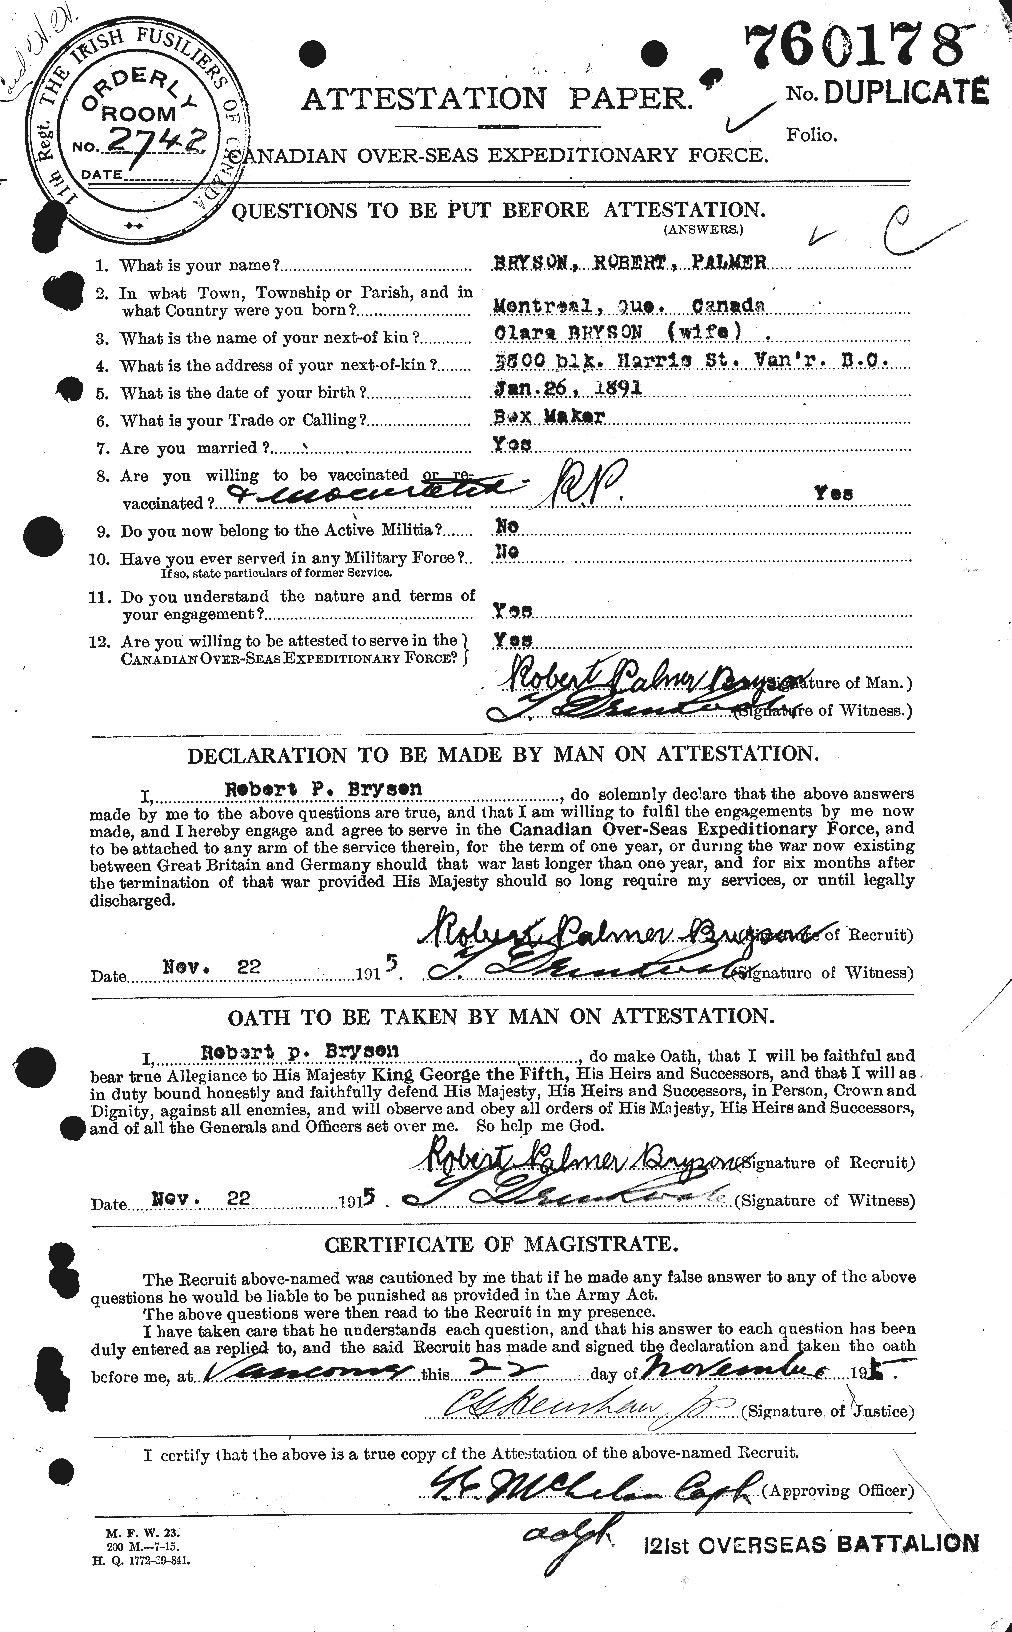 Dossiers du Personnel de la Première Guerre mondiale - CEC 268966a